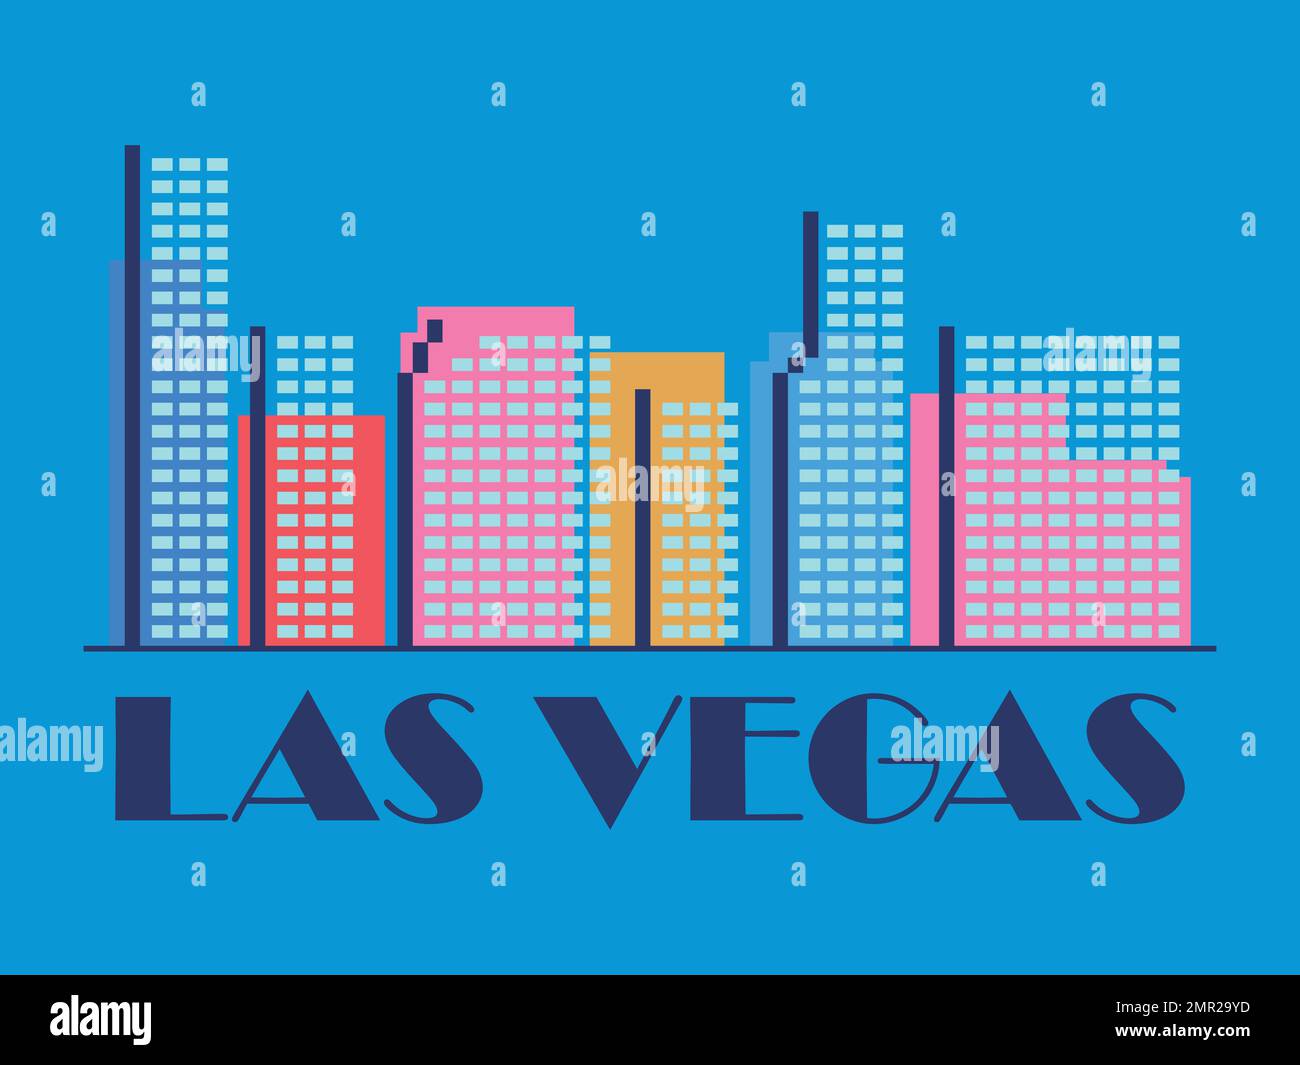 Il paesaggio di Las Vegas in stile vintage. Bandiera retrò della città di Las Vegas con grattacieli in stile lineare. Design per stampa, poster e mater promozionale Illustrazione Vettoriale